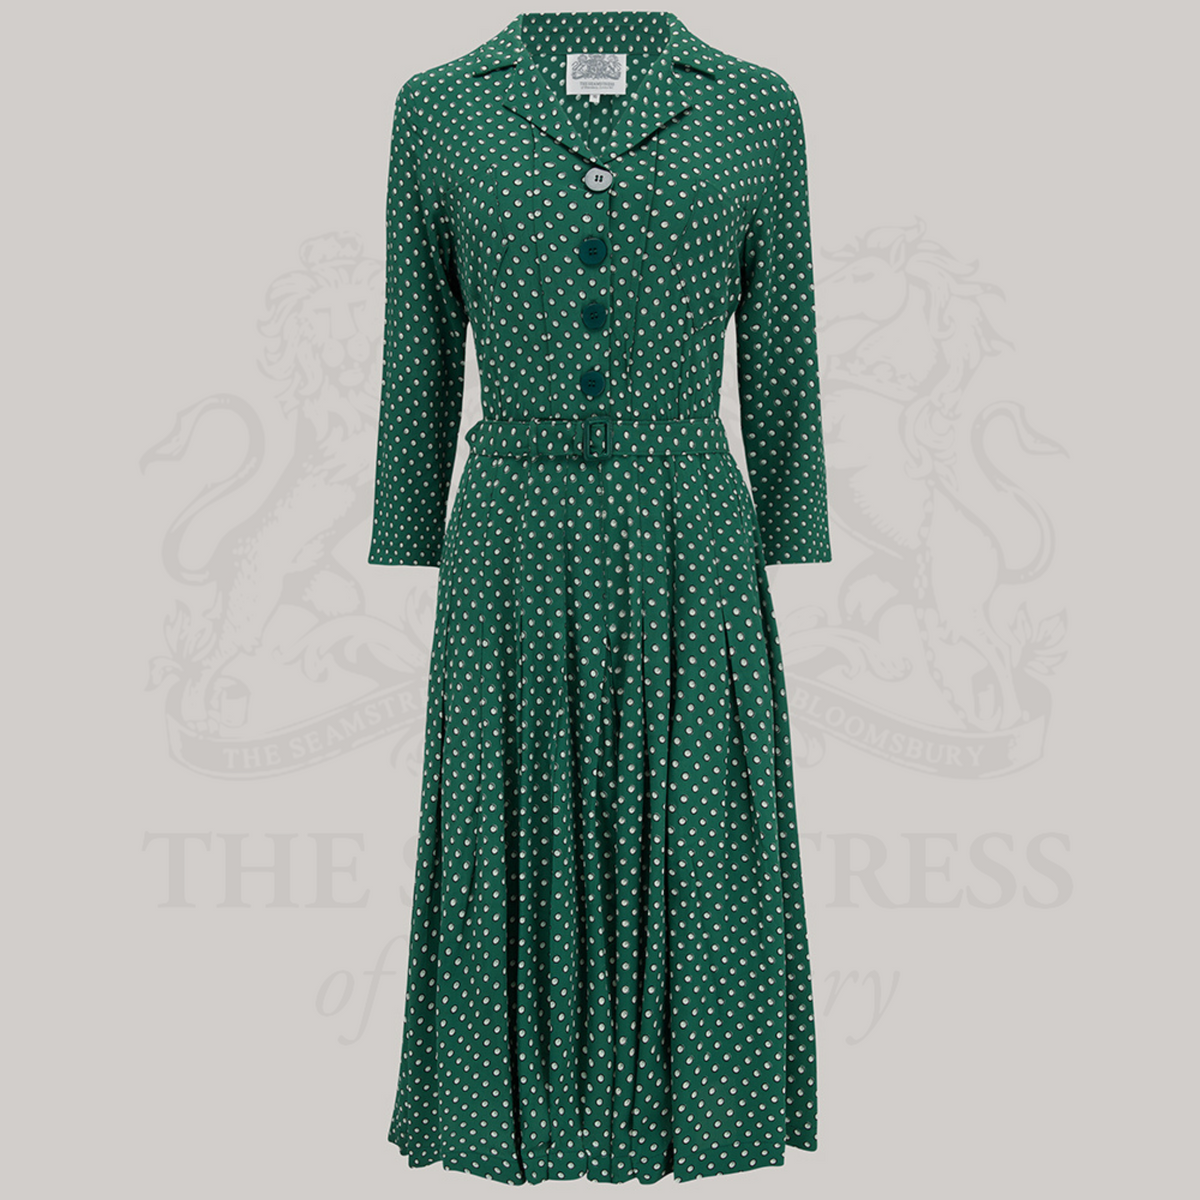 Lucille Shirtwaister Dress in Green Ditzy Dot